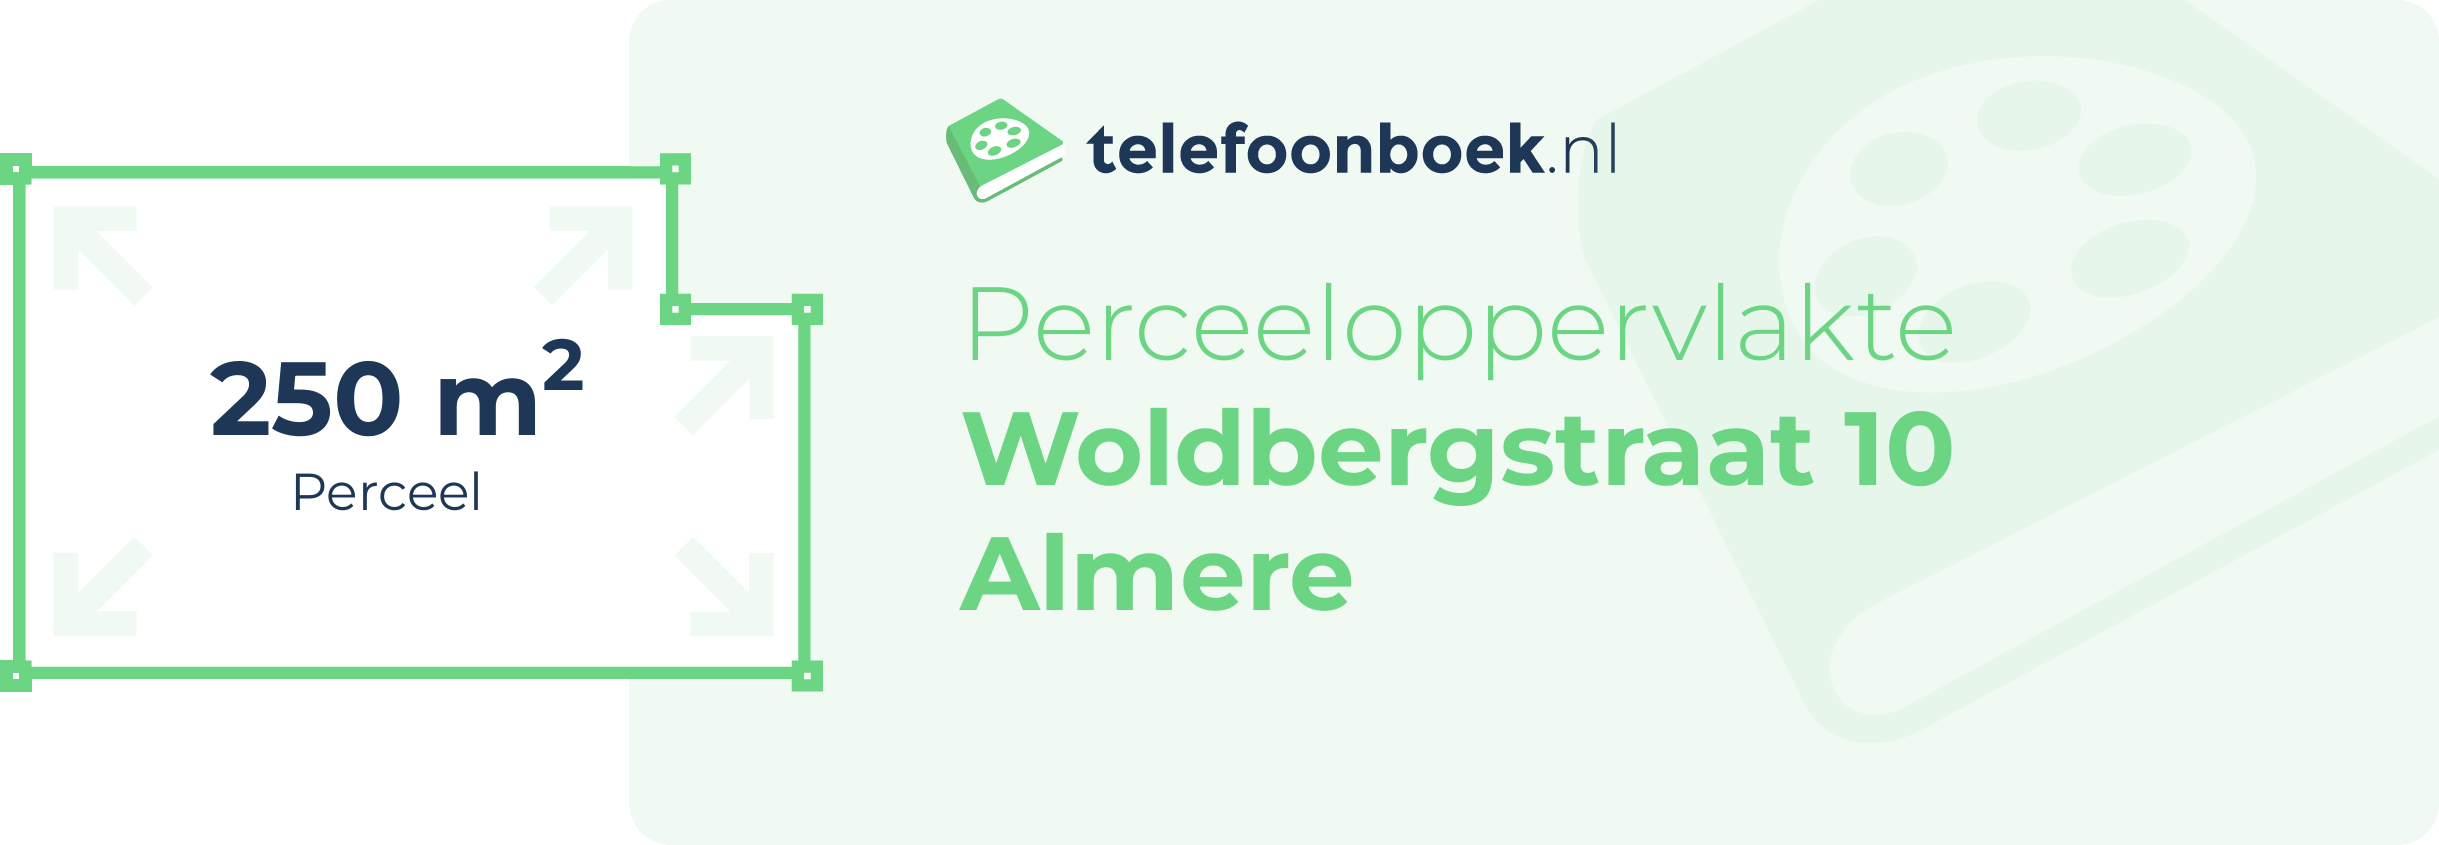 Perceeloppervlakte Woldbergstraat 10 Almere